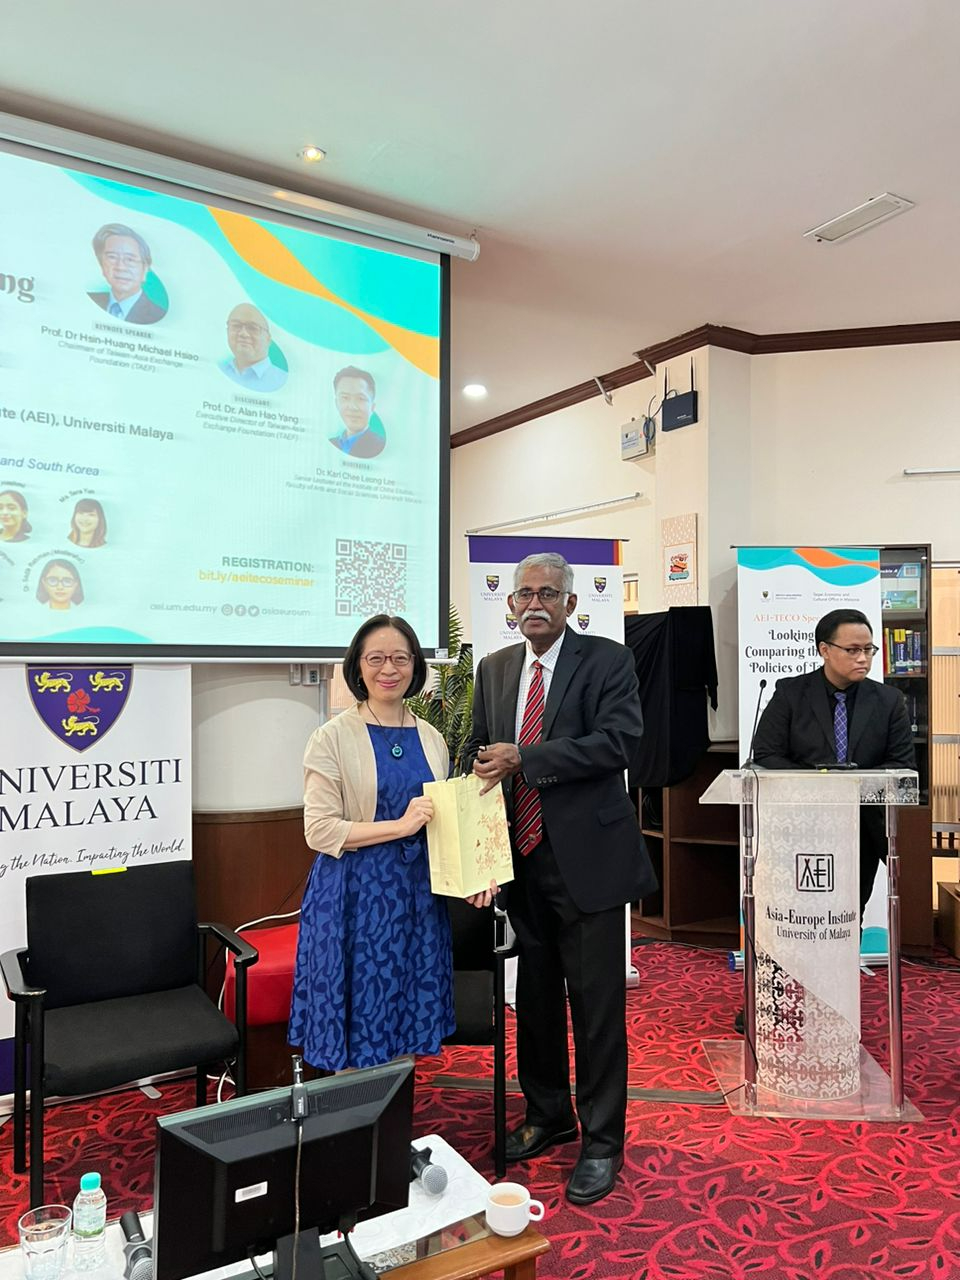 葉非比大使致贈馬來亞大學亞歐學院(Asia-Europe Institute, University of Malaya)
執行長Dato Dr. Rajah Rasih紀念品。
